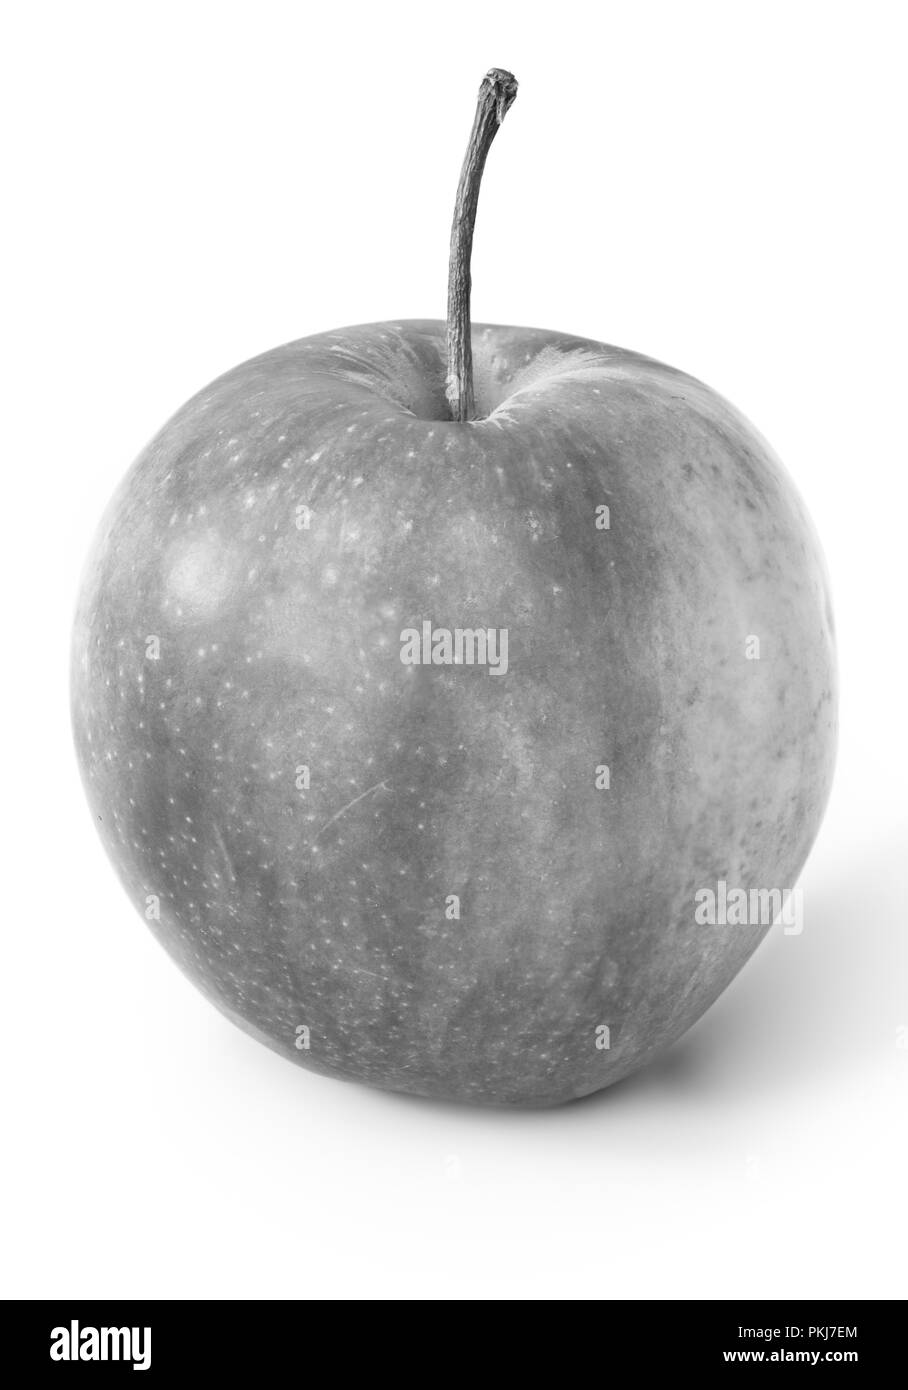 Schwarz-weiß Bild von einer Apple vor einem weißen Hintergrund Stockfoto